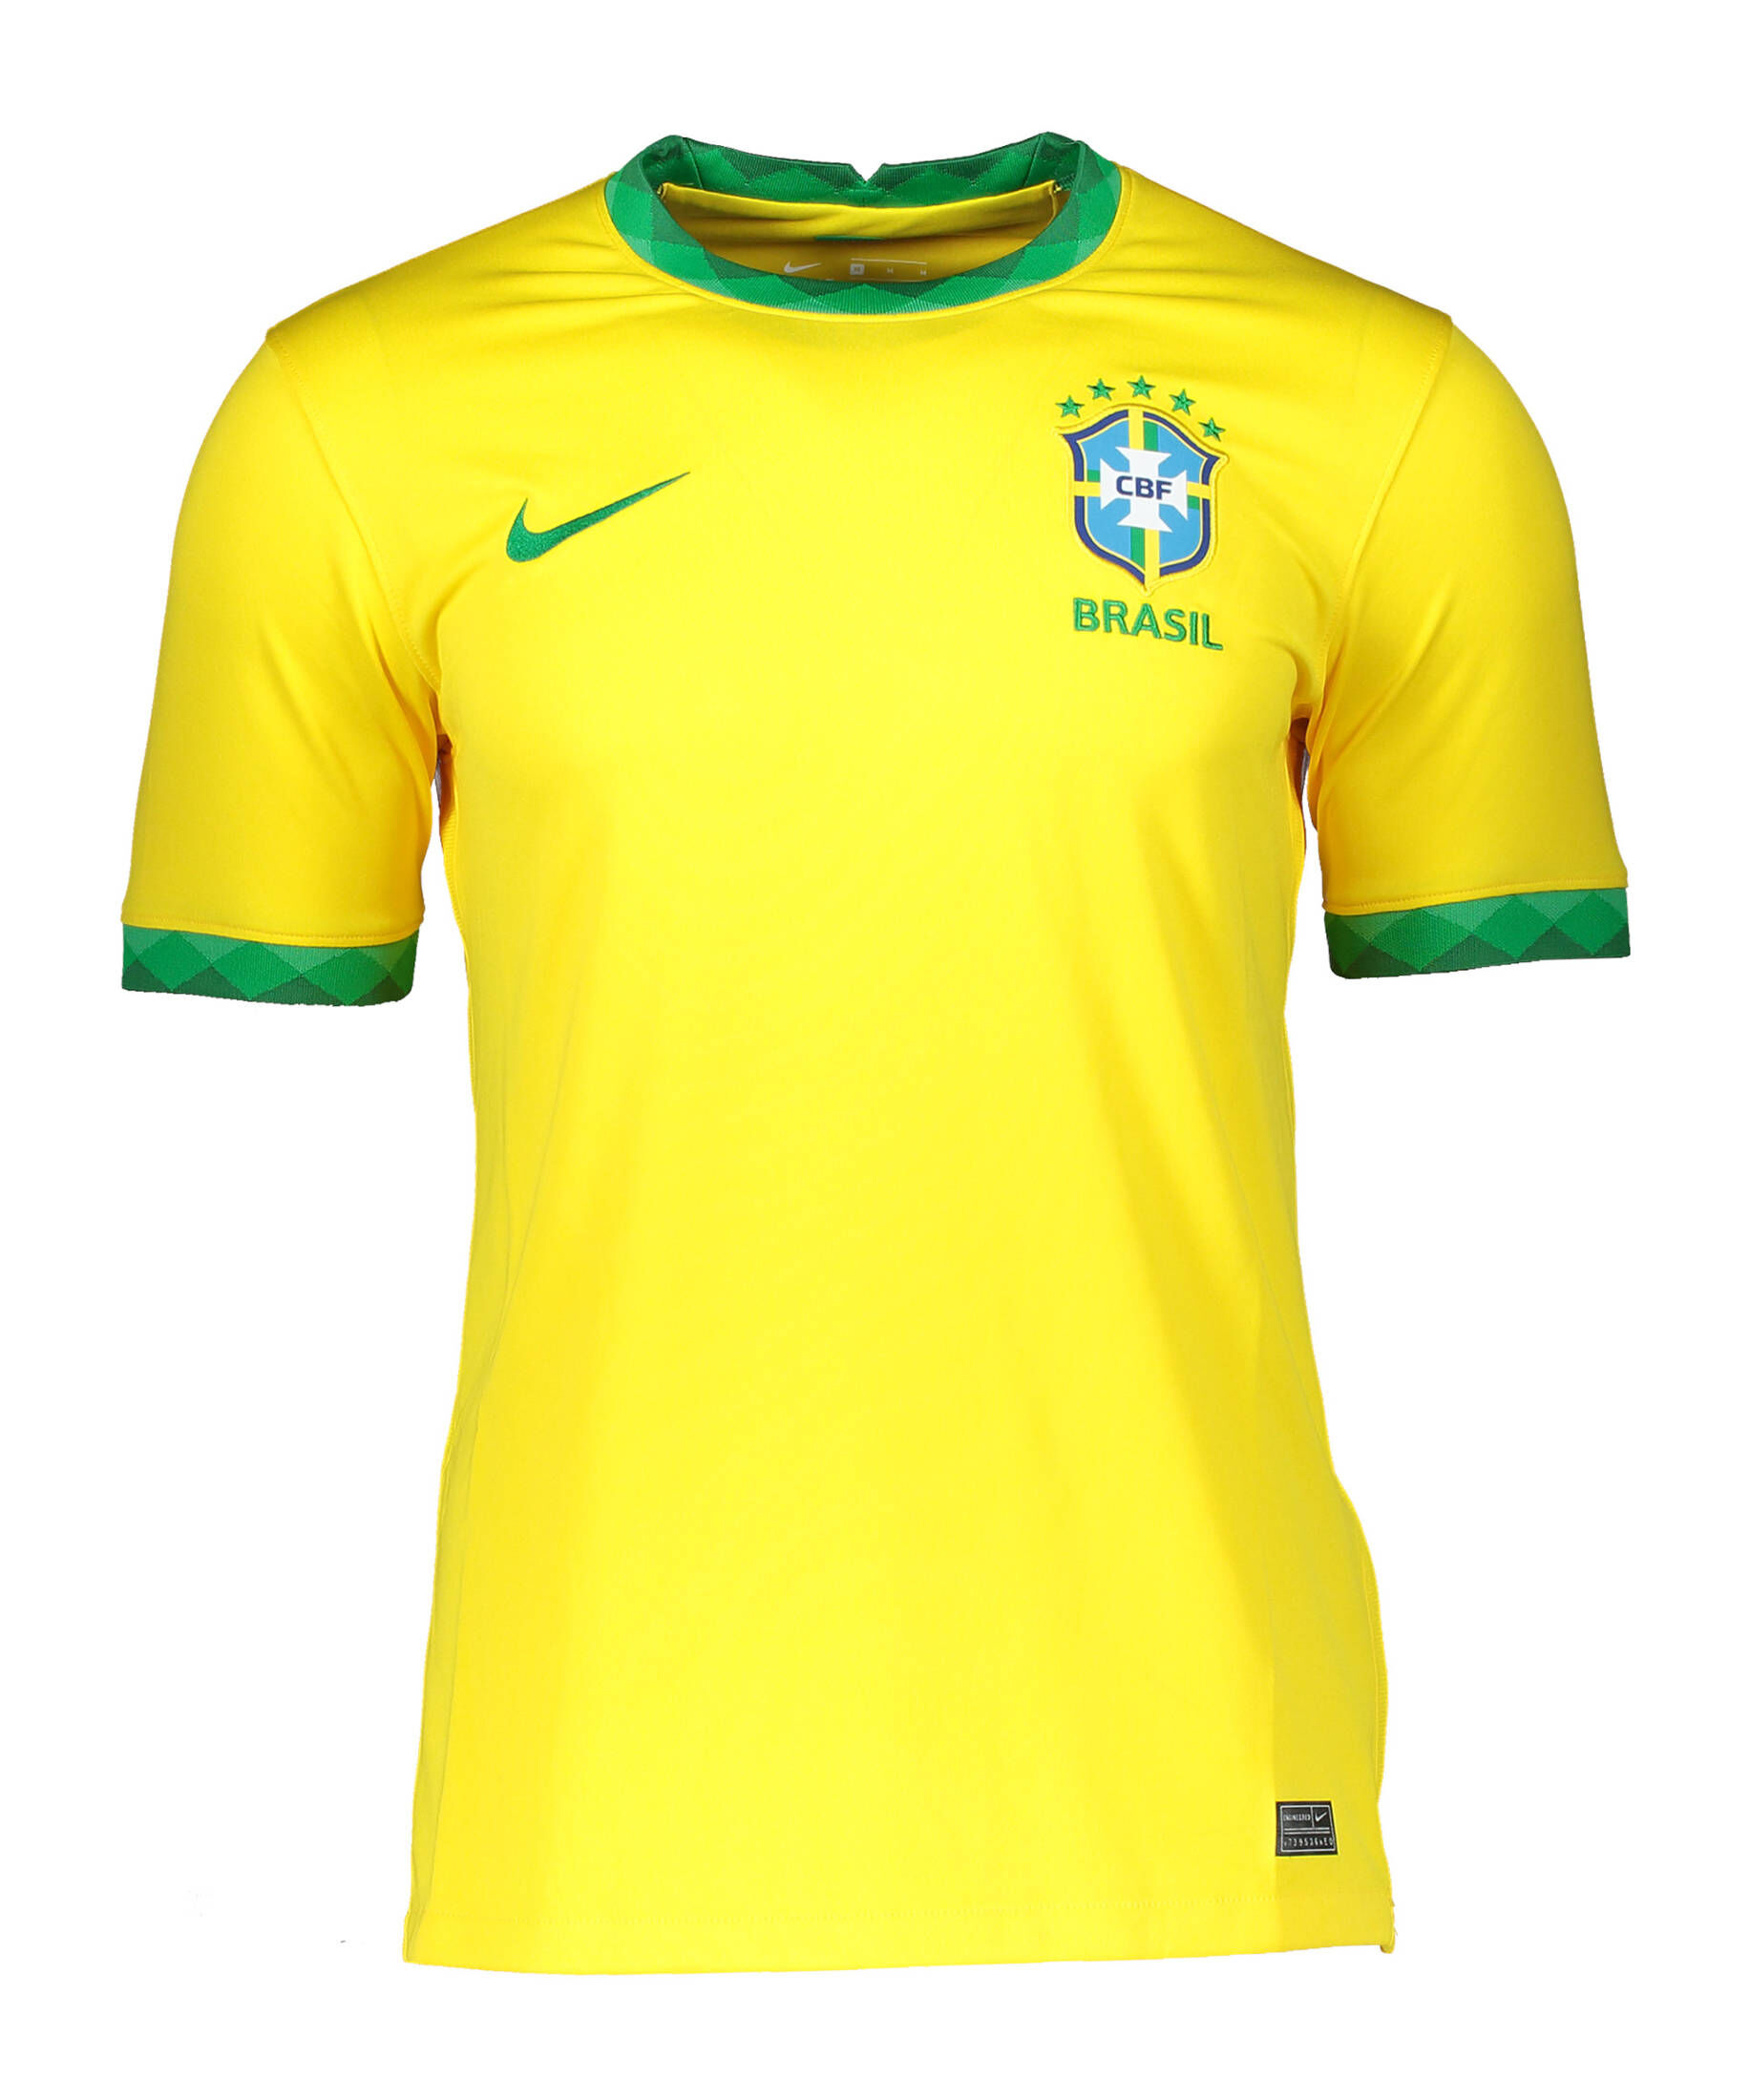 Herren Fußball T-Shirt Brasilien